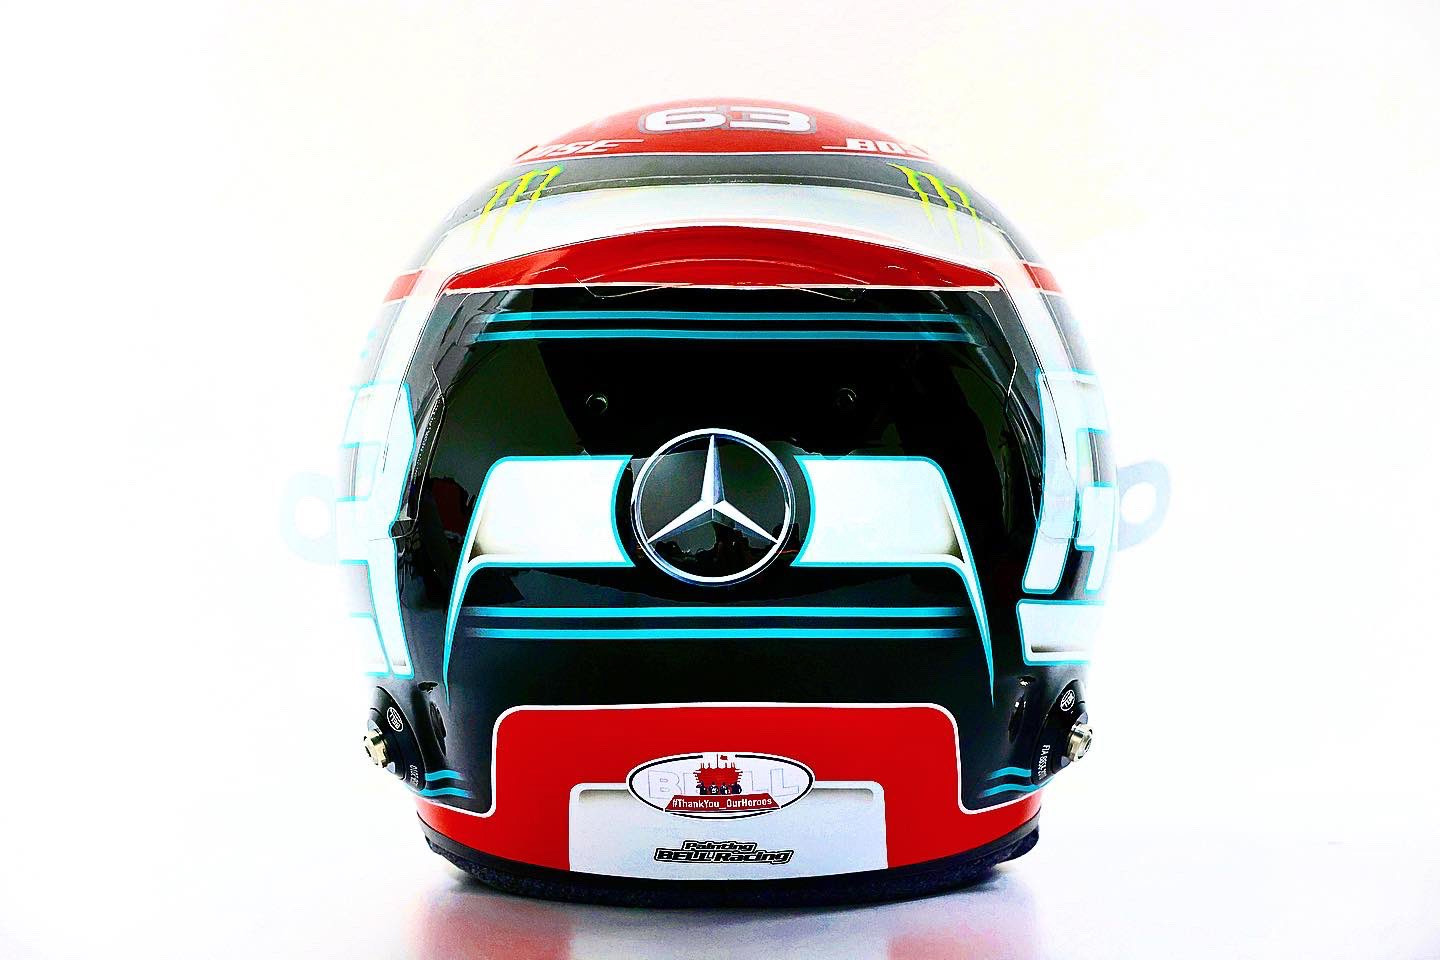 George Russell's Sakhir Grand Prix helmet